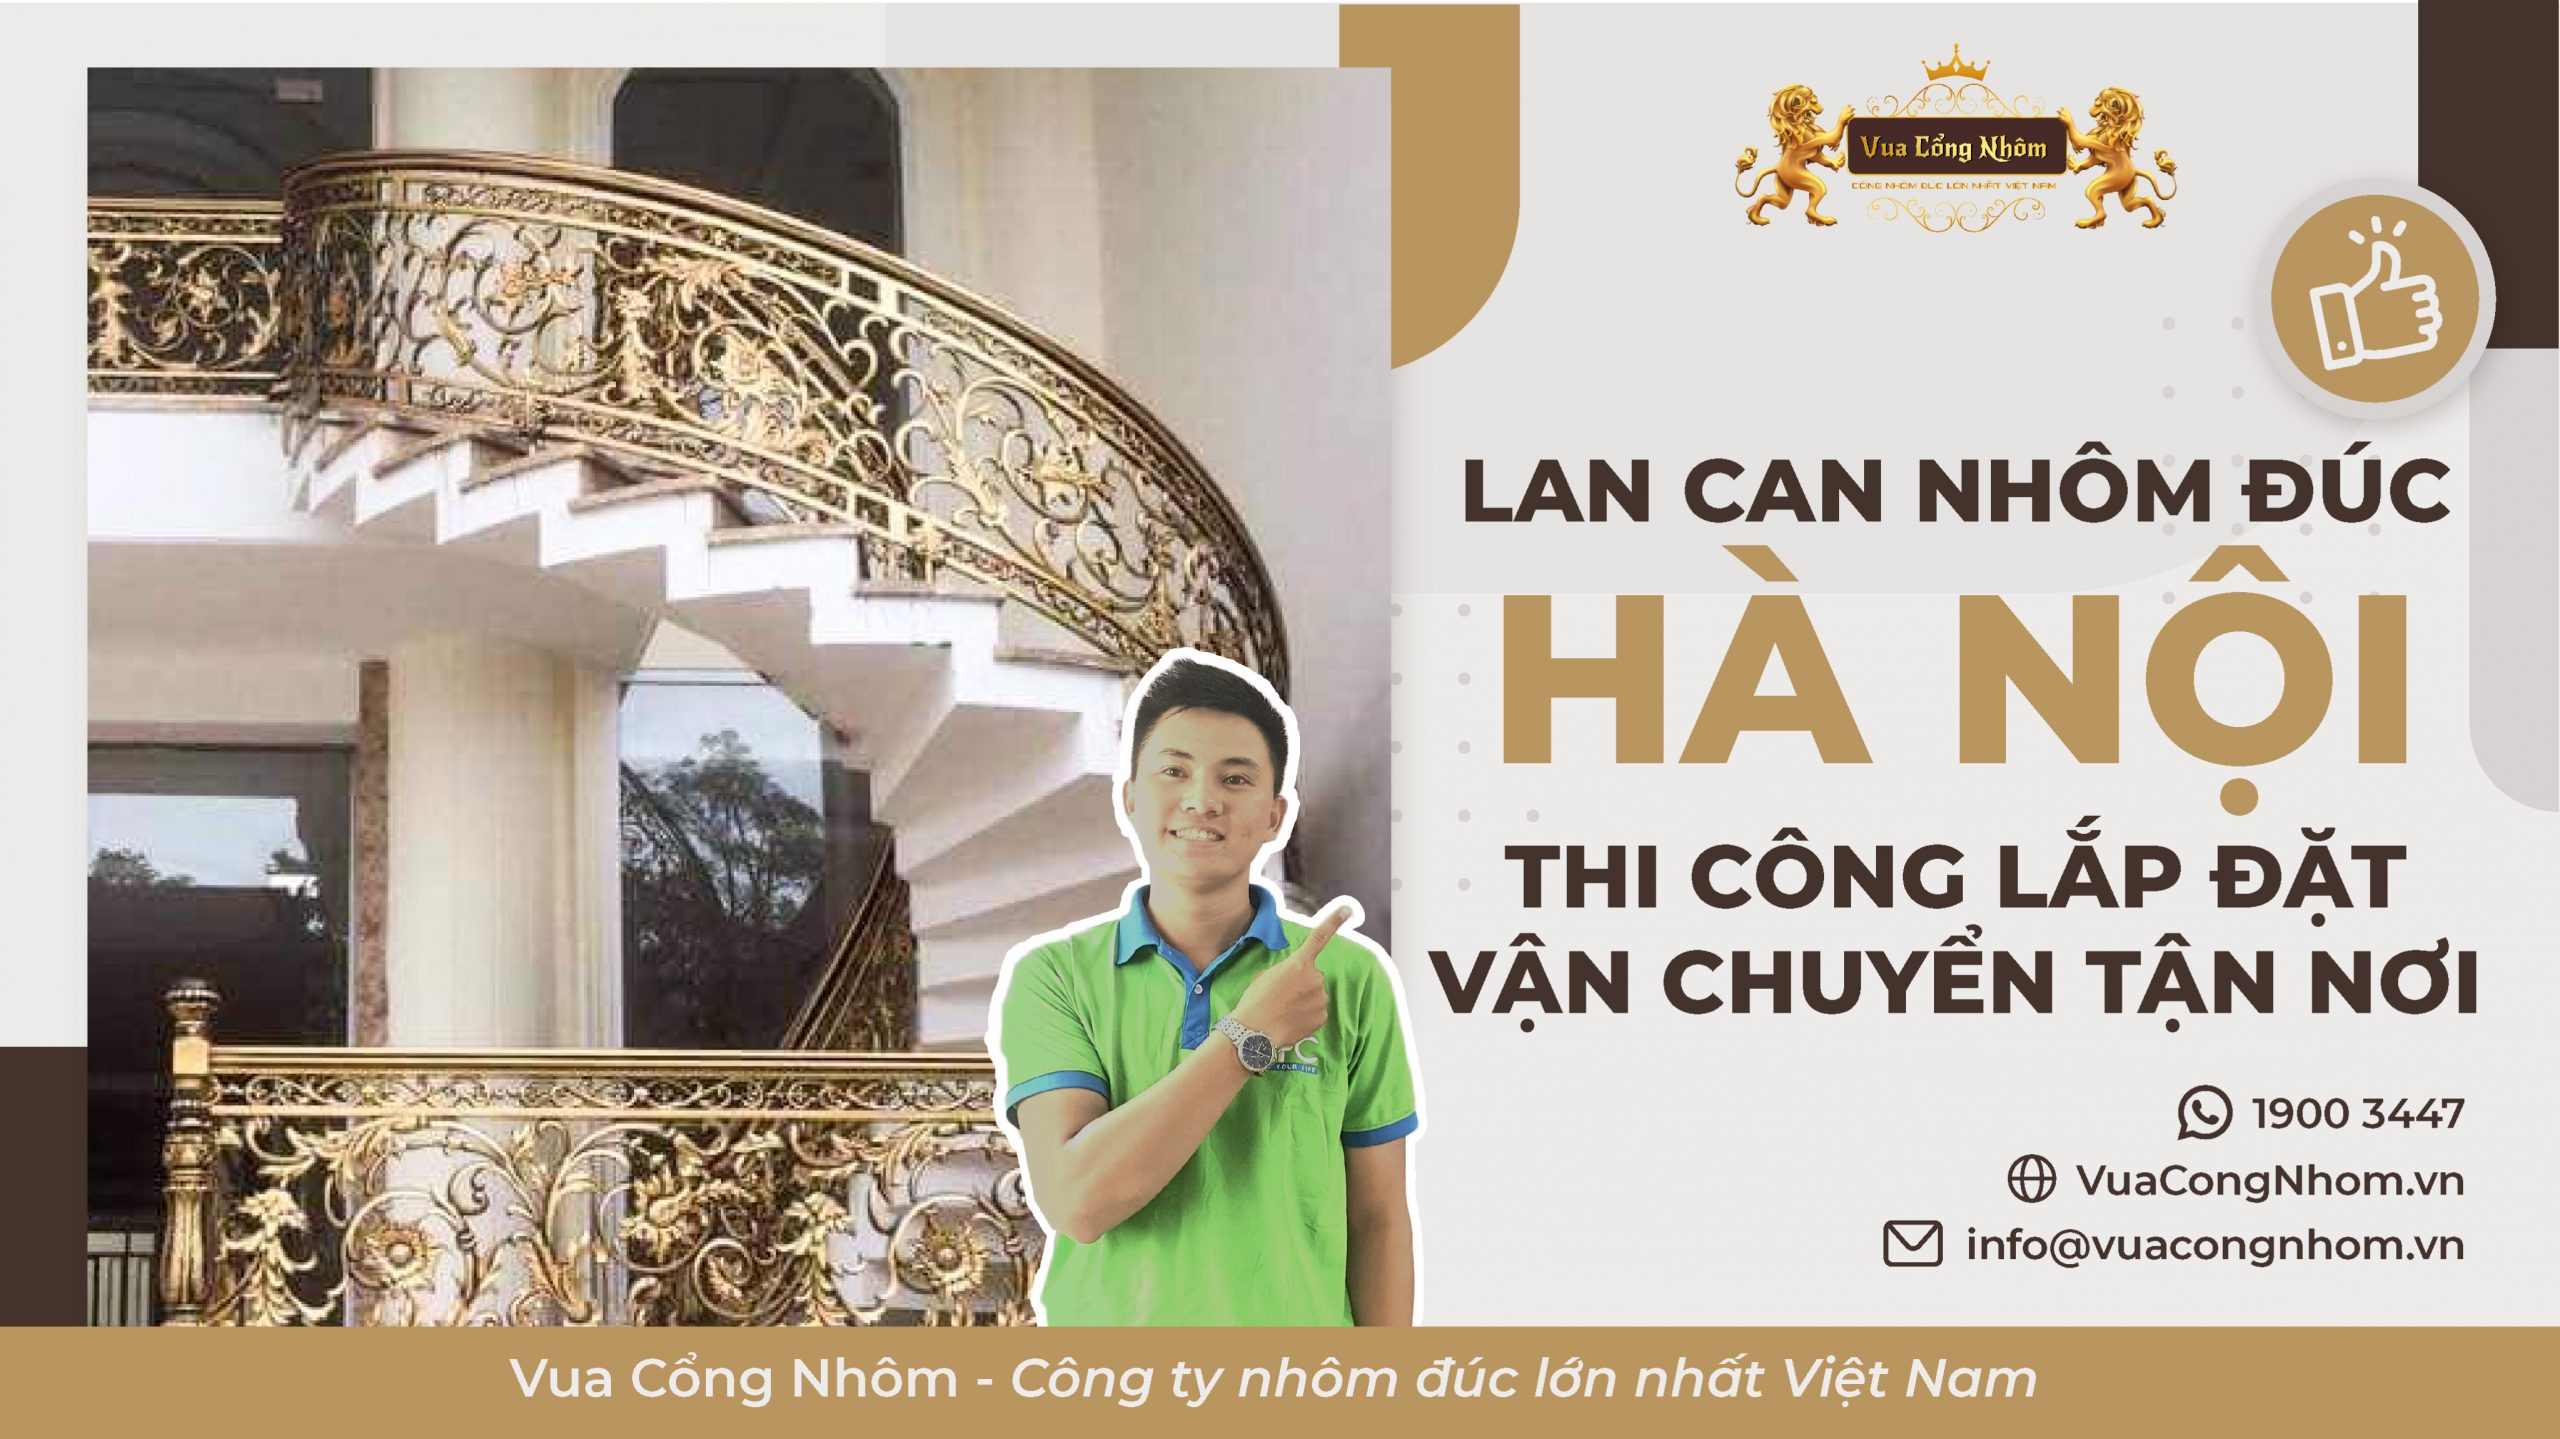 Mua lan can nhôm đúc Hà Nội tại Vua Cổng Nhôm giá rẻ, bền đẹp